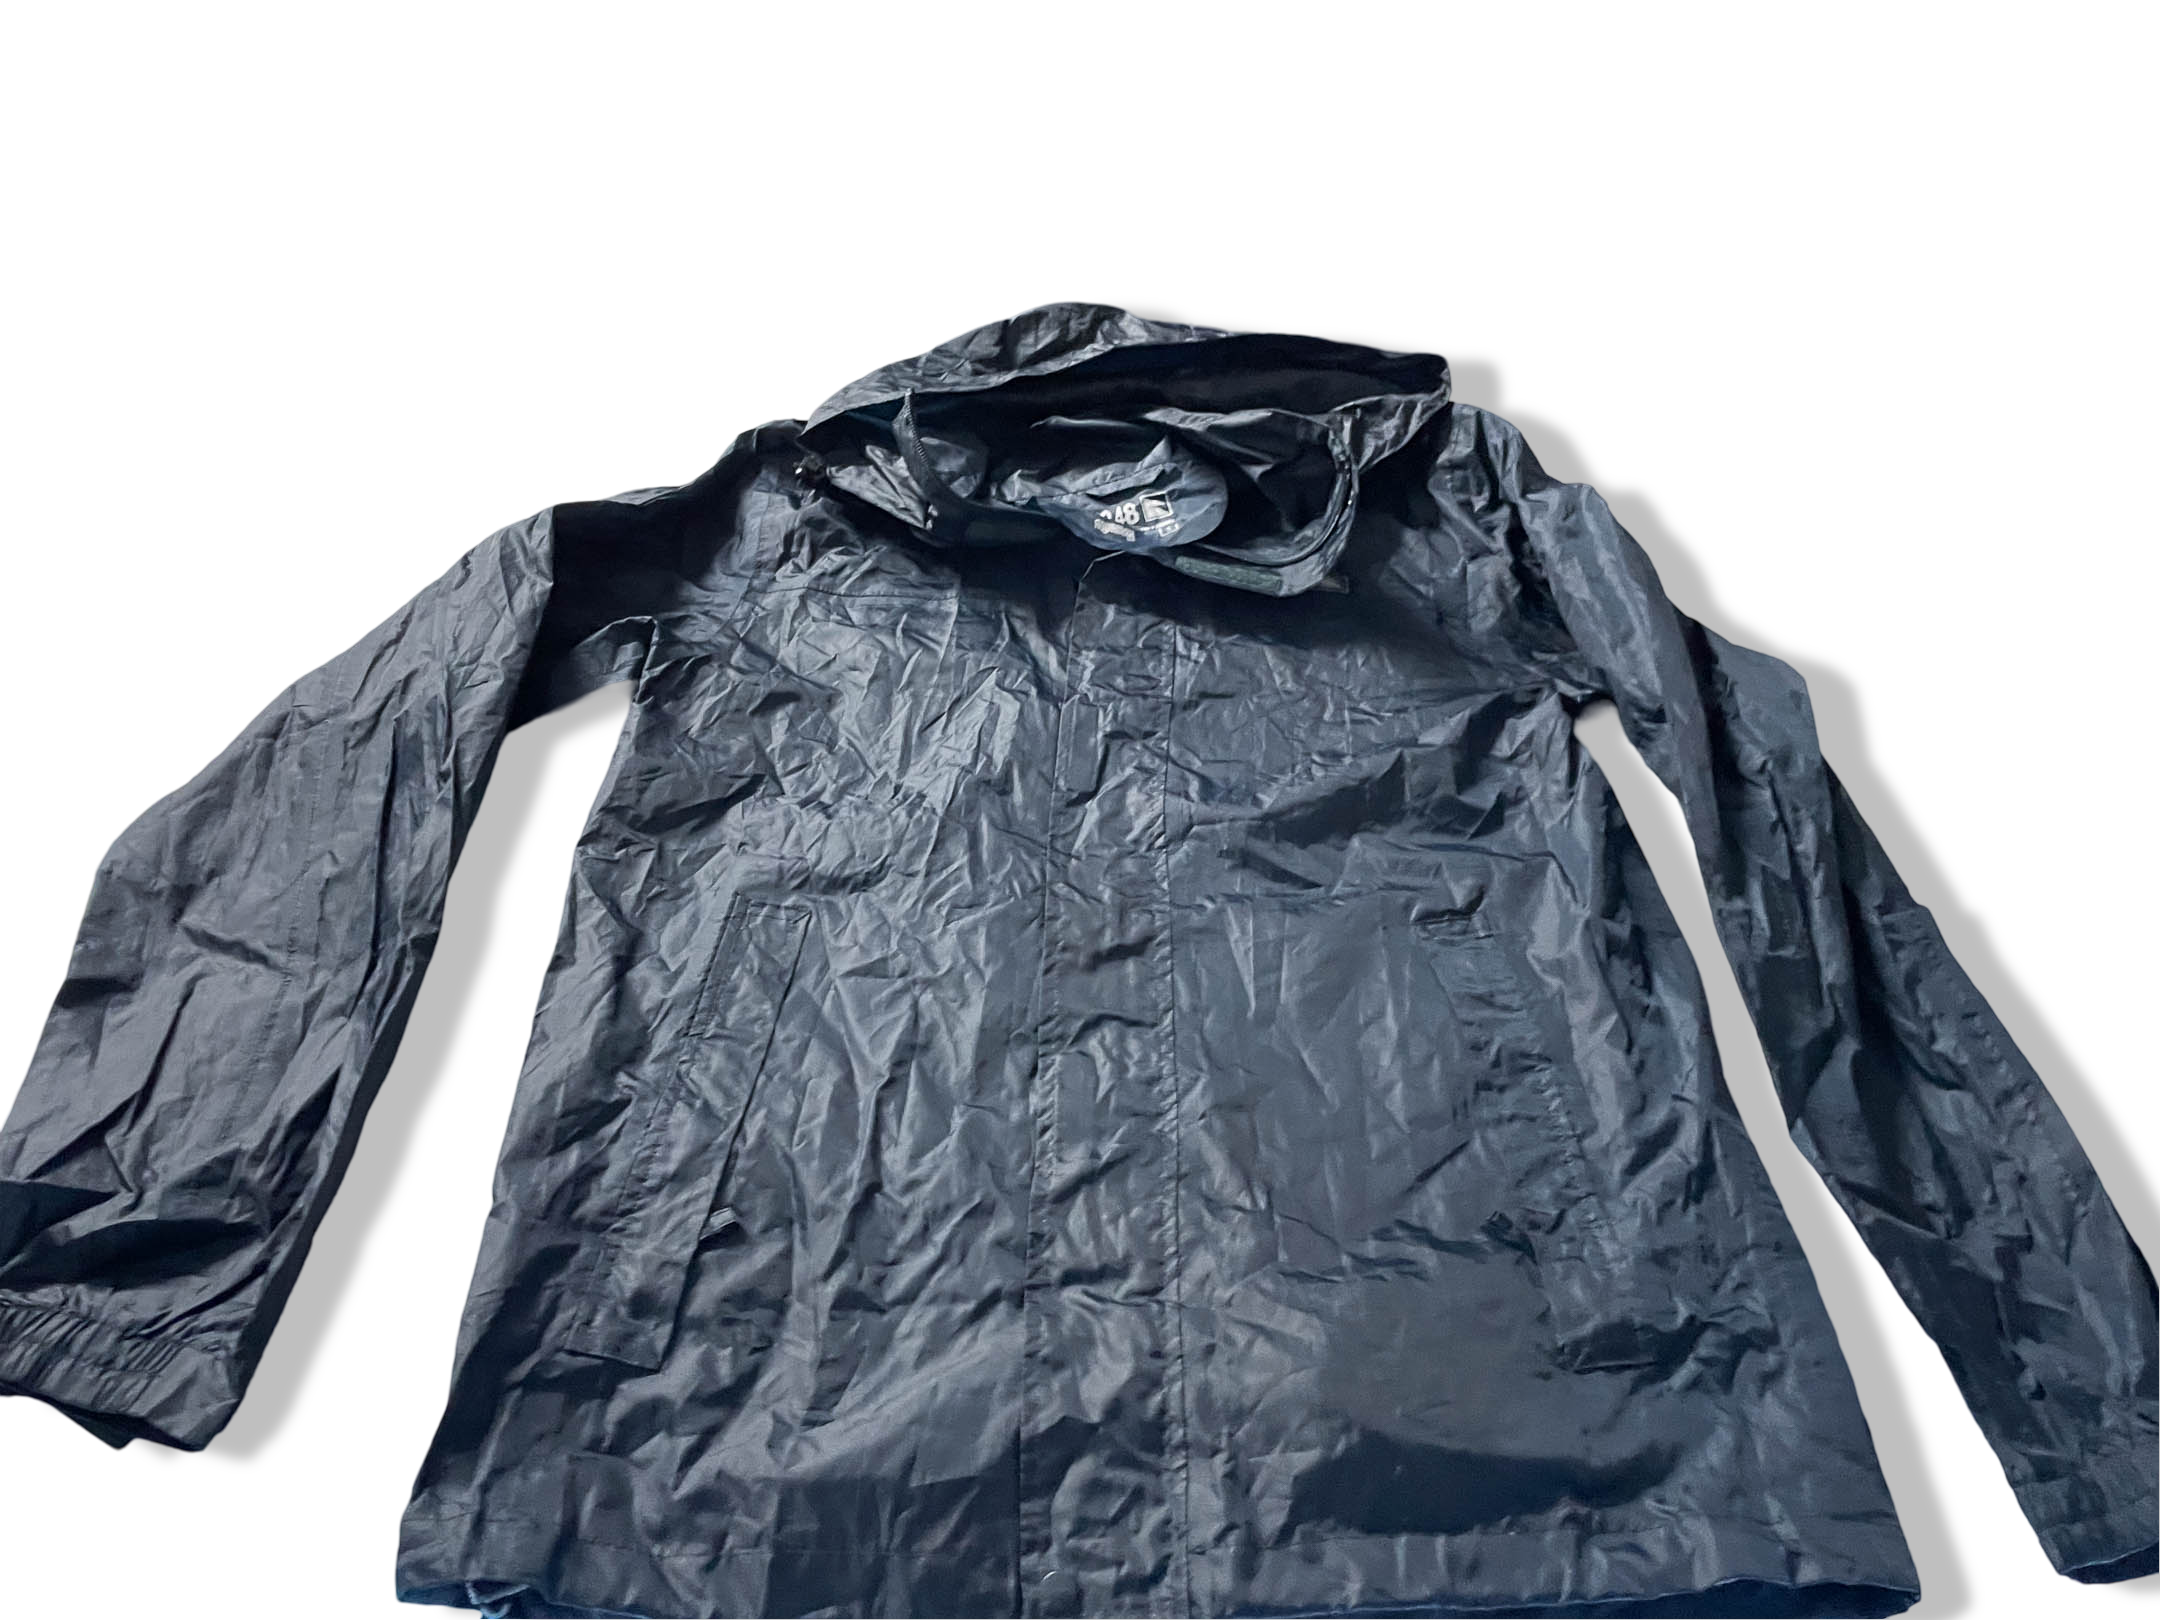 Vintage Aquamak black nylon rain hoodie jacket in S |L29 W19| SKU 4026